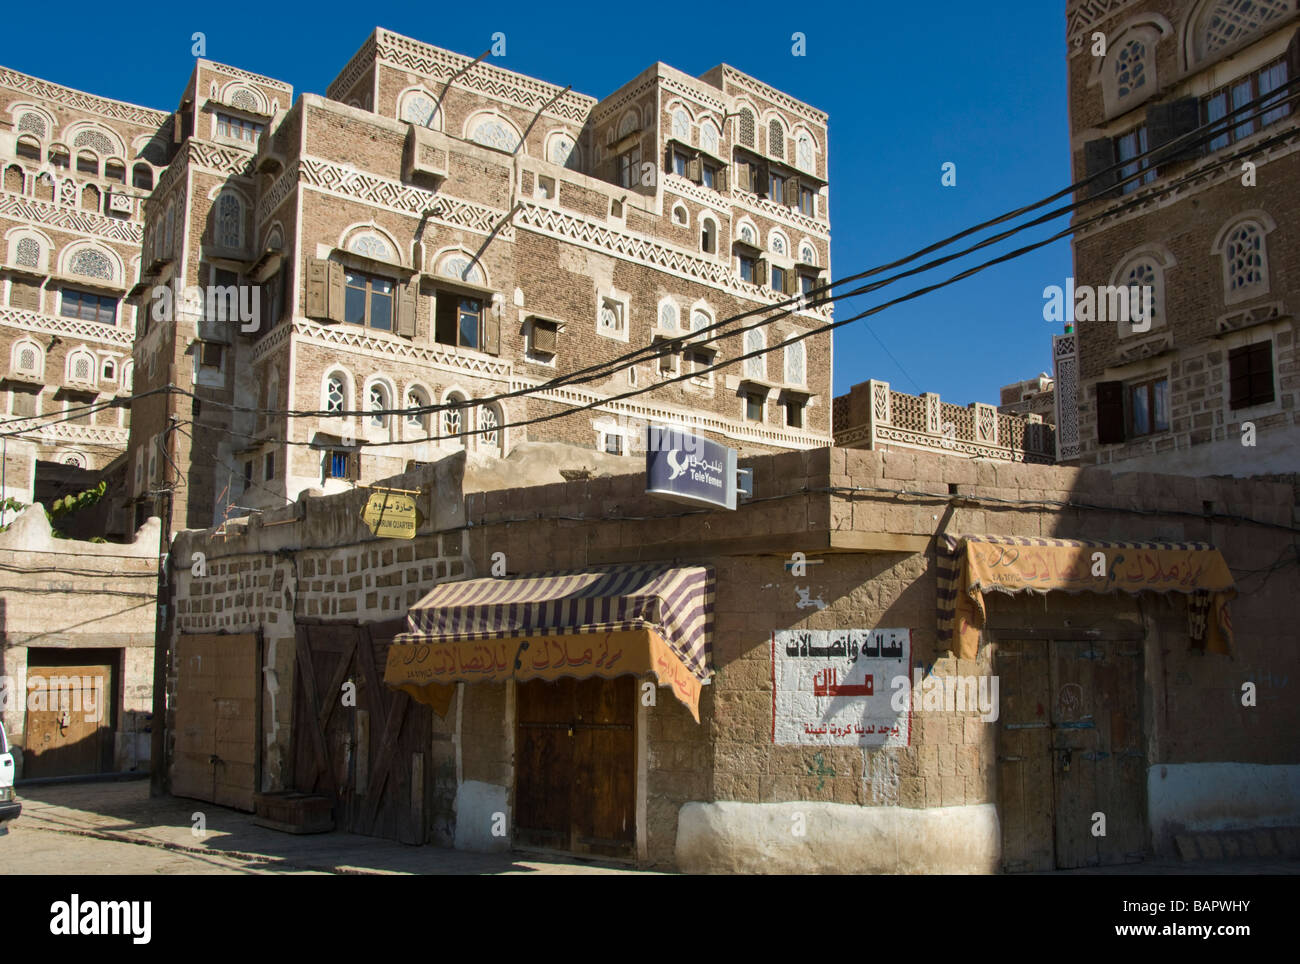 Traditionelle Gebäude in der alten Stadt Bezirk Sana'a Jemen Stockfoto